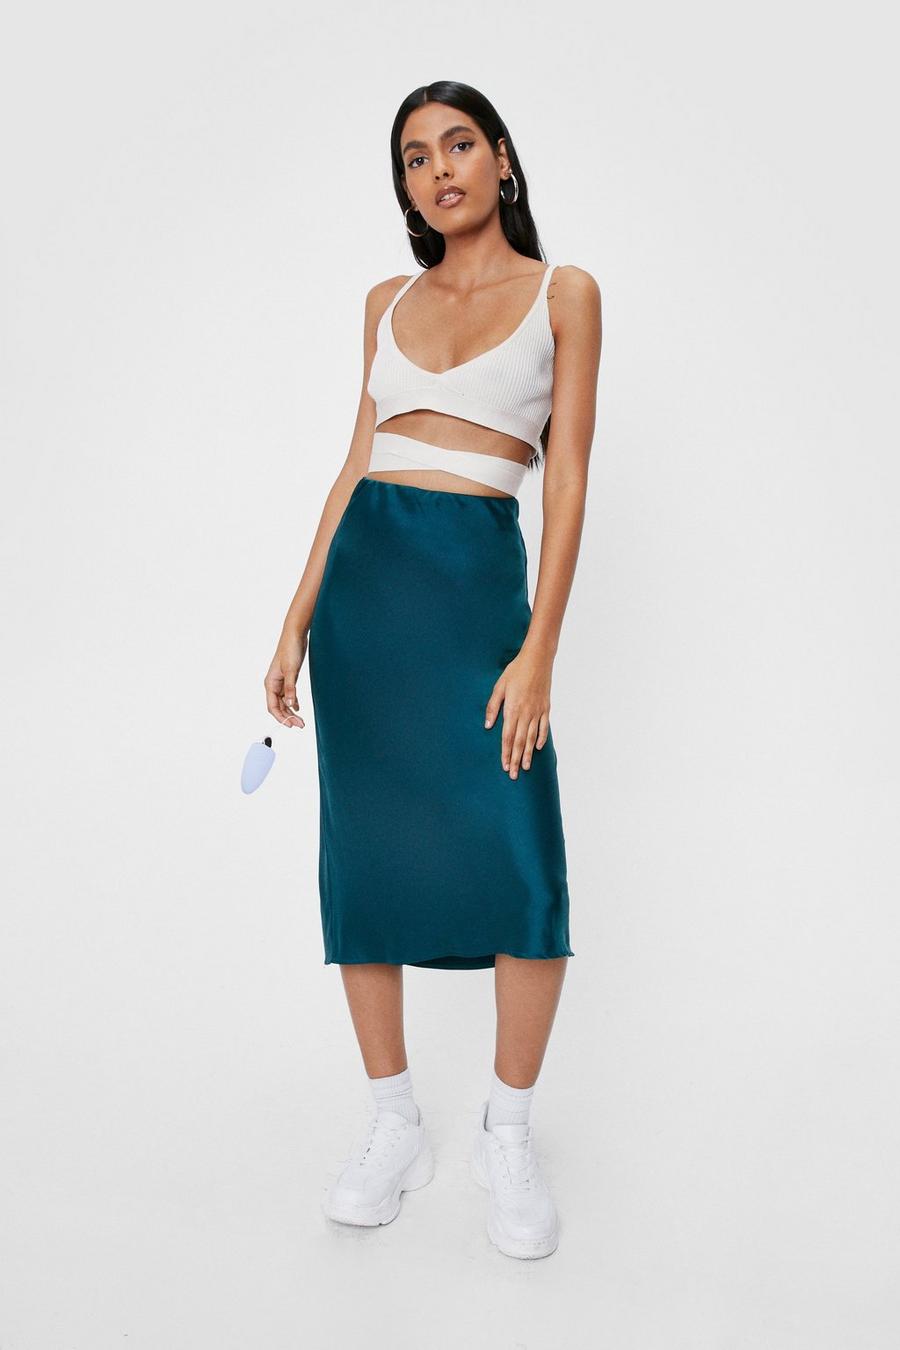 Just My Type Satin Midi Skirt